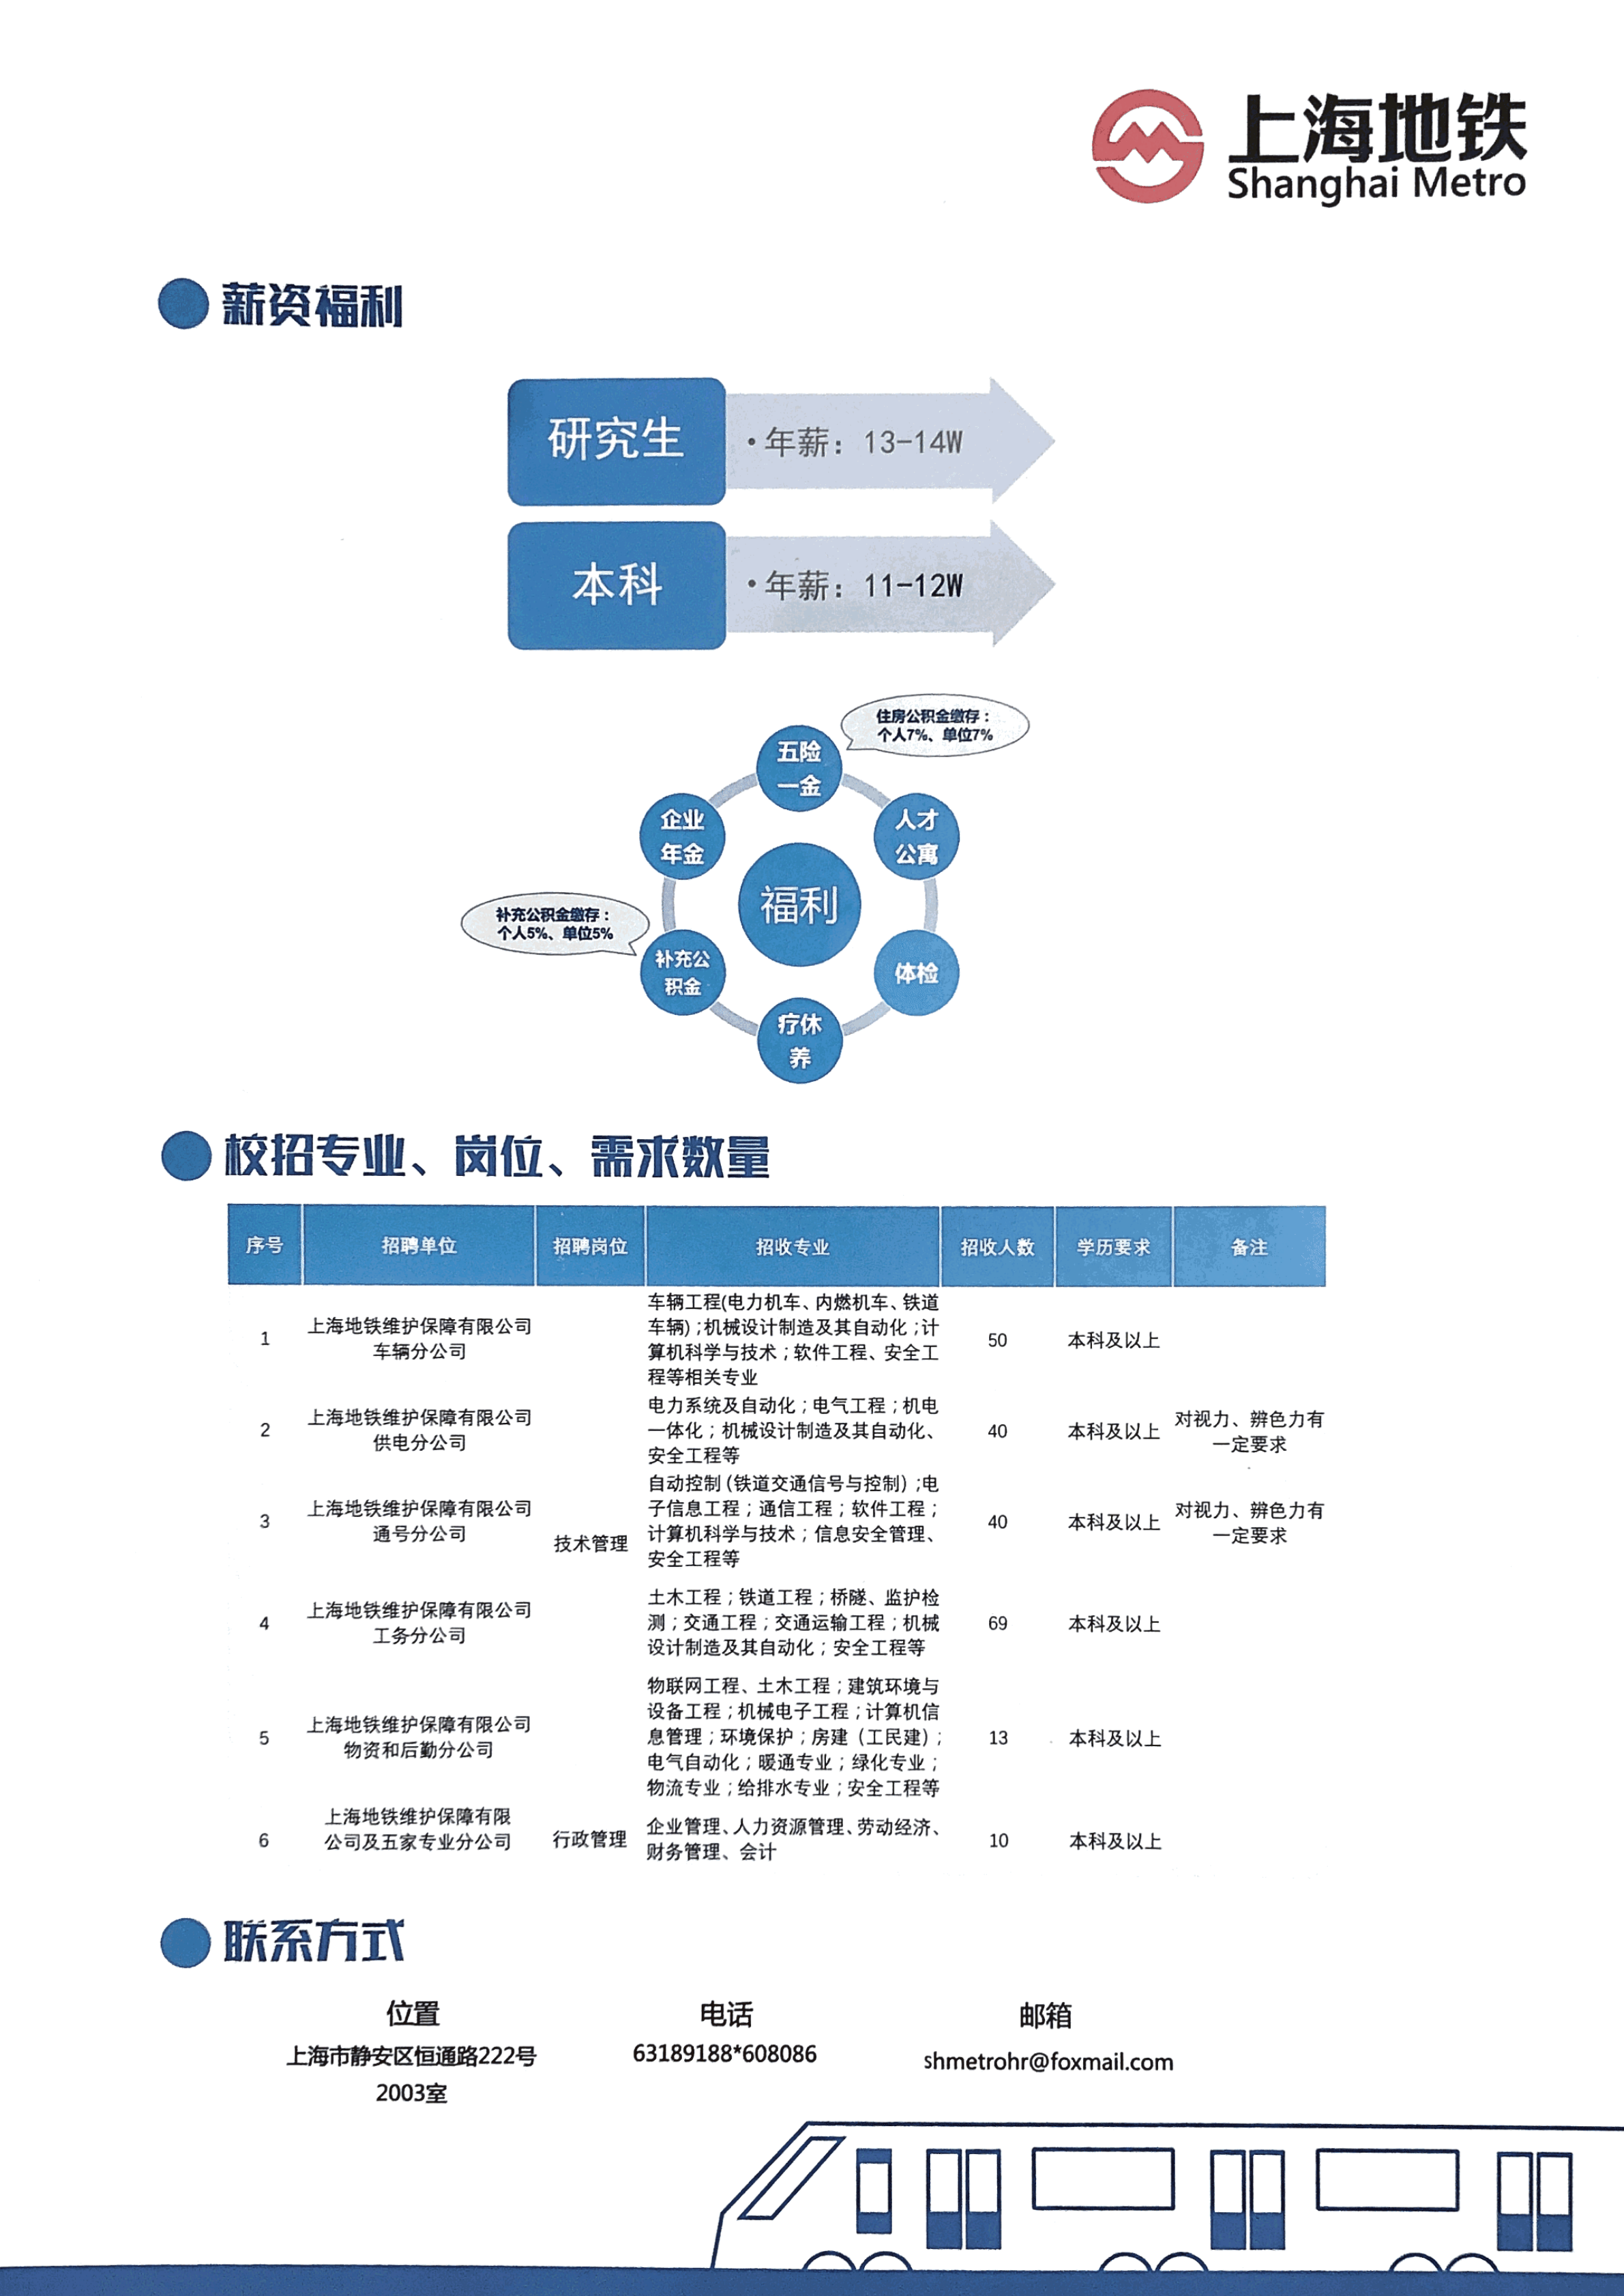 上海地铁维护保障有限公司2020届校园招聘简章(1)_01.png